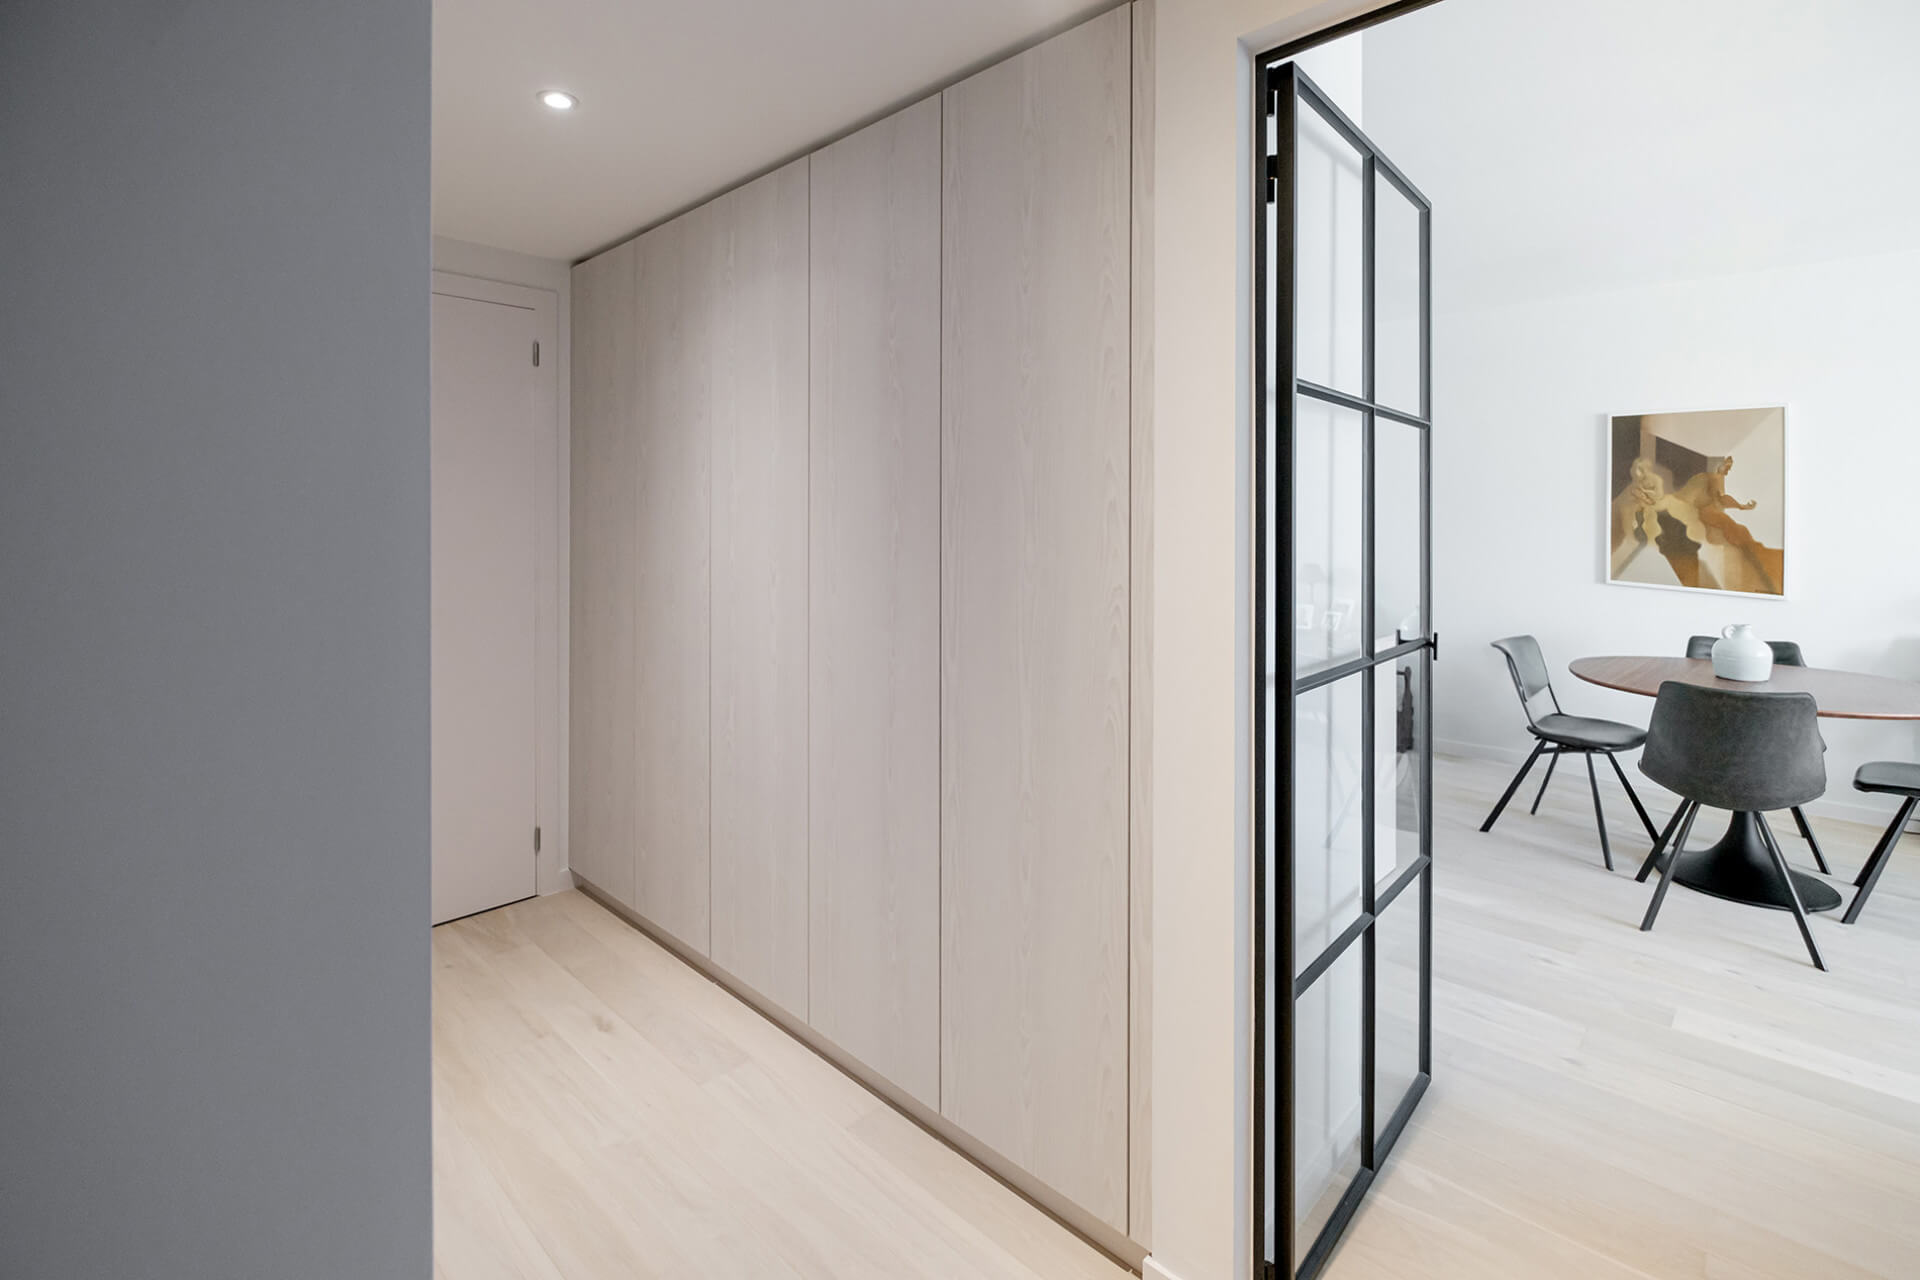 Custom built-in cabinet in Silver Grey from maatkasten online